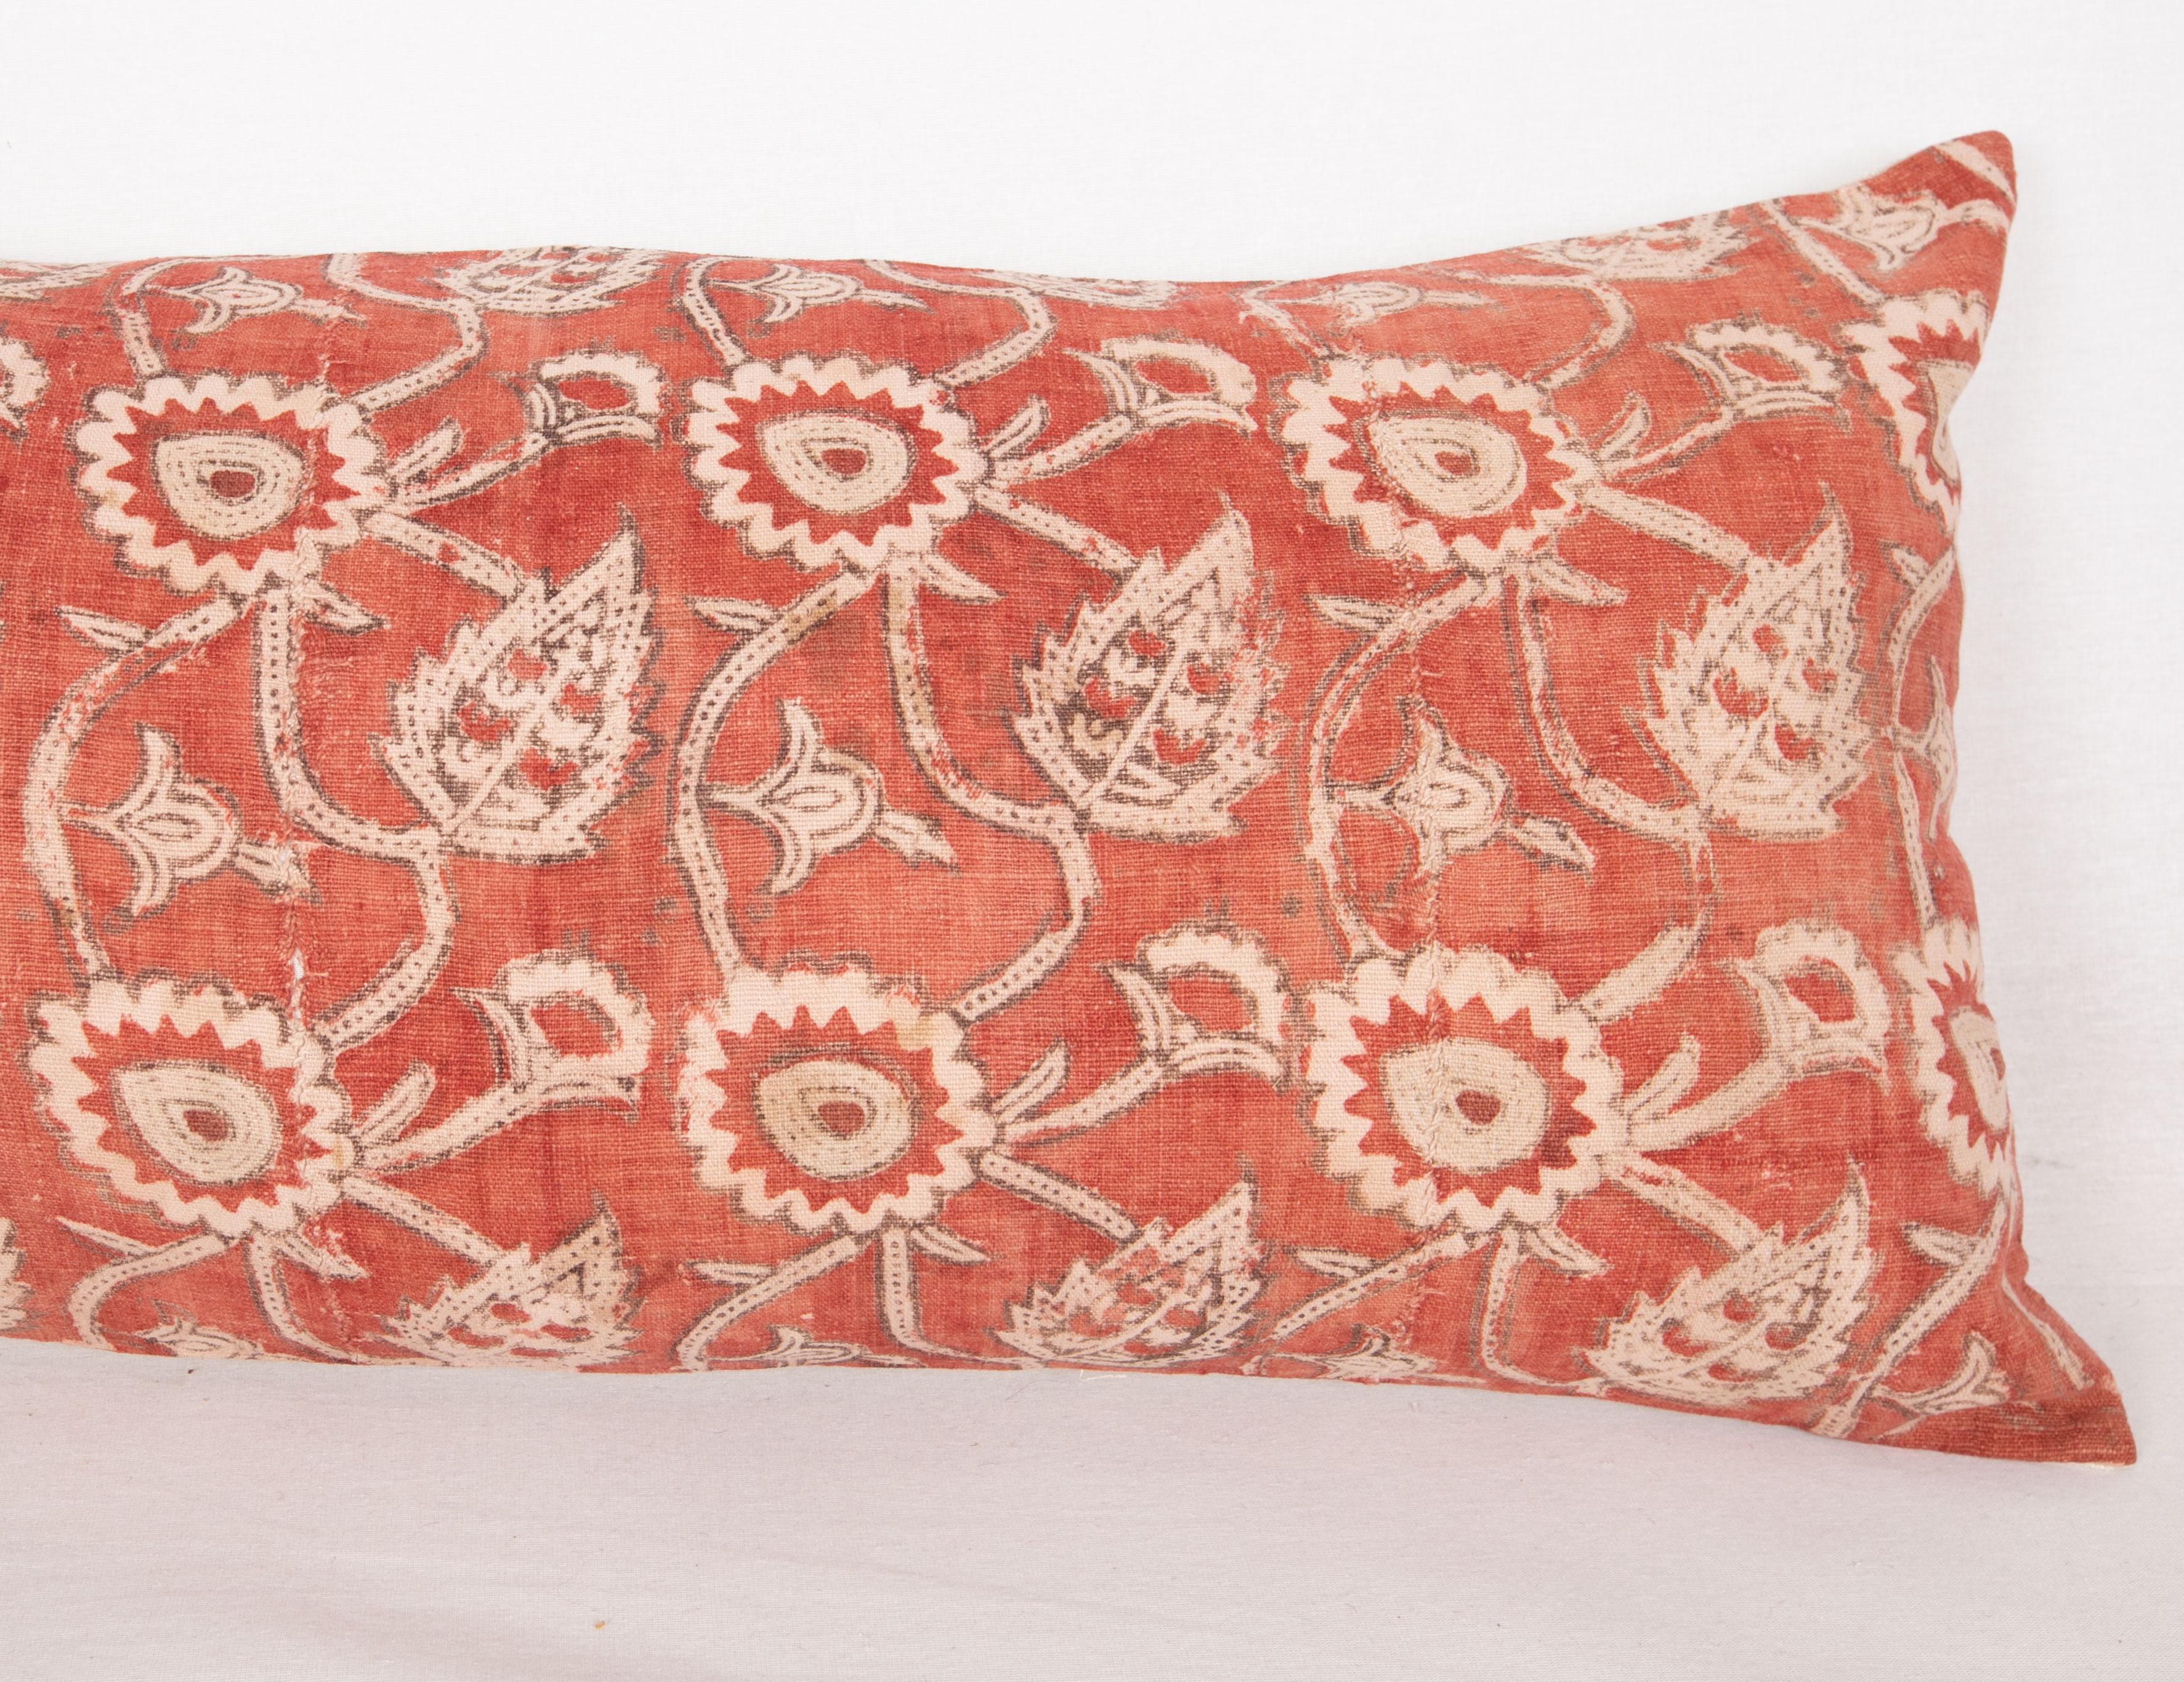 Kalamkari Block Printed Cotton Pillow Cover, Uzbekistan, 1930s